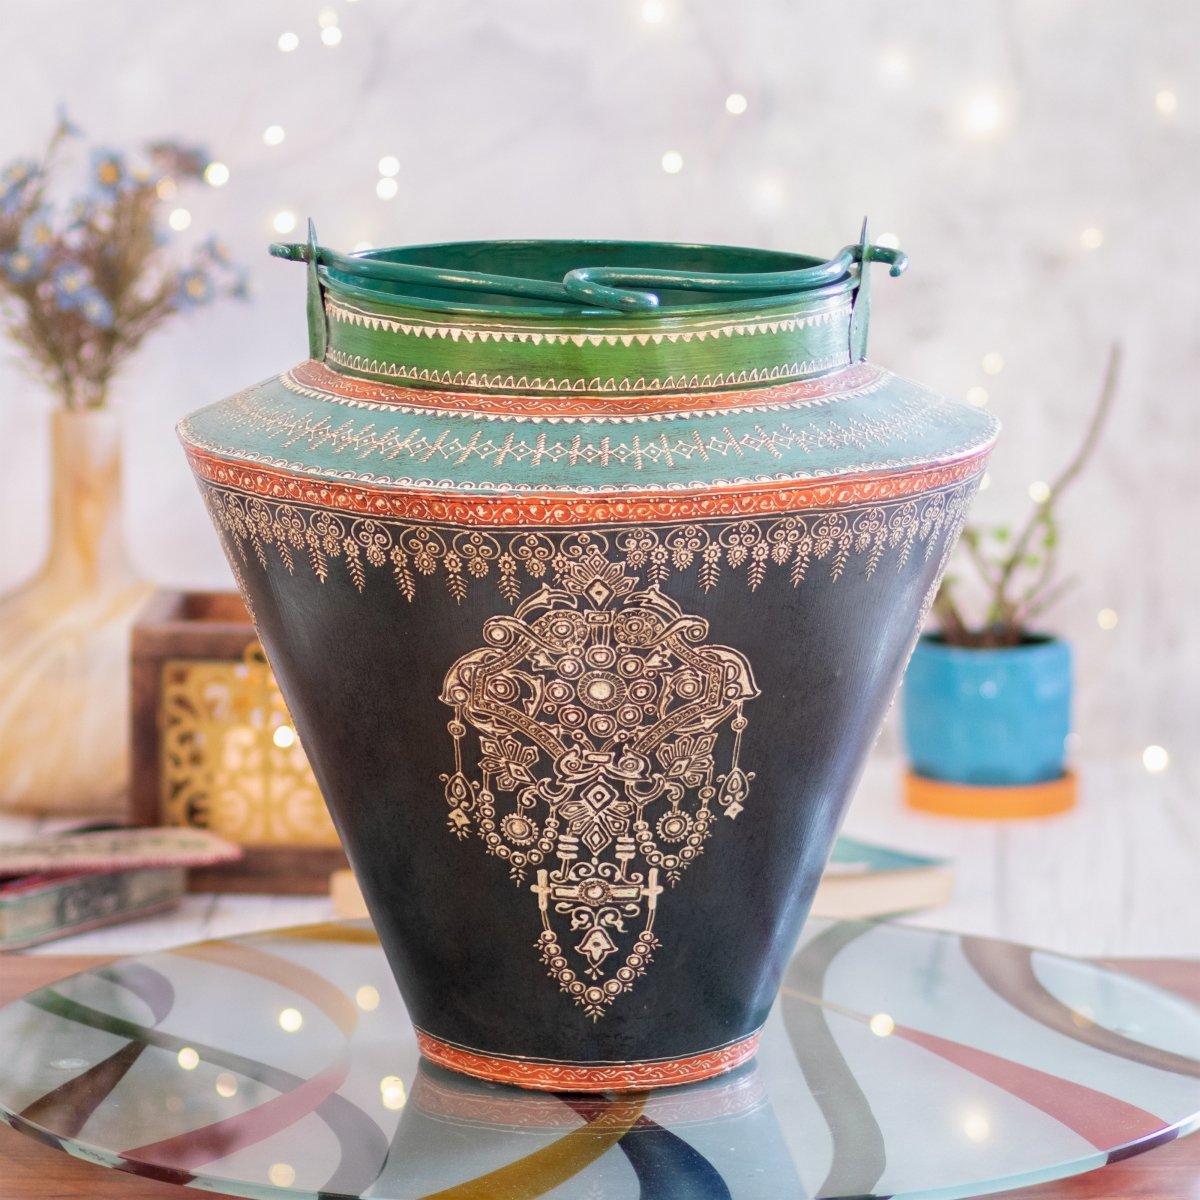 Kezevel Metal Decorative Floor Vase Pot - Antique Green Blue Handcrafted Vases for Living Room Corner, Metal Pot Home Decor